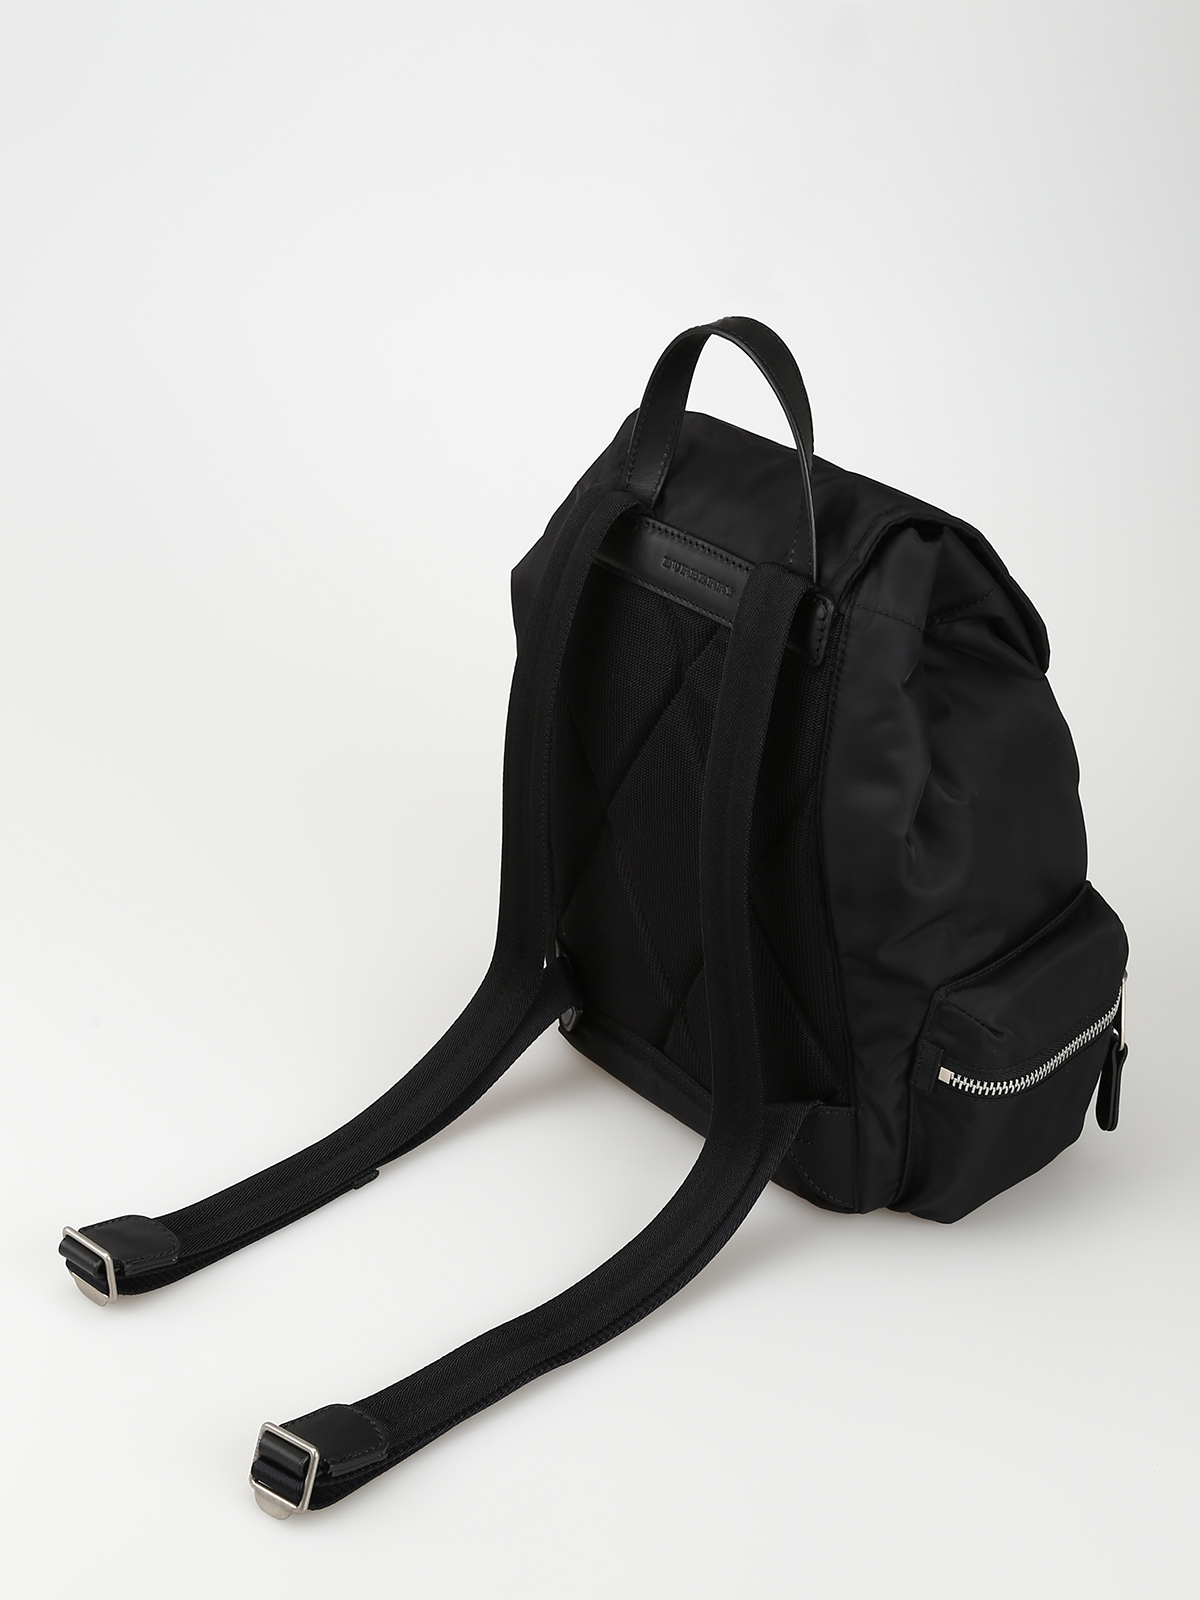 Actualizar 55+ imagen burberry black backpack - Abzlocal.mx